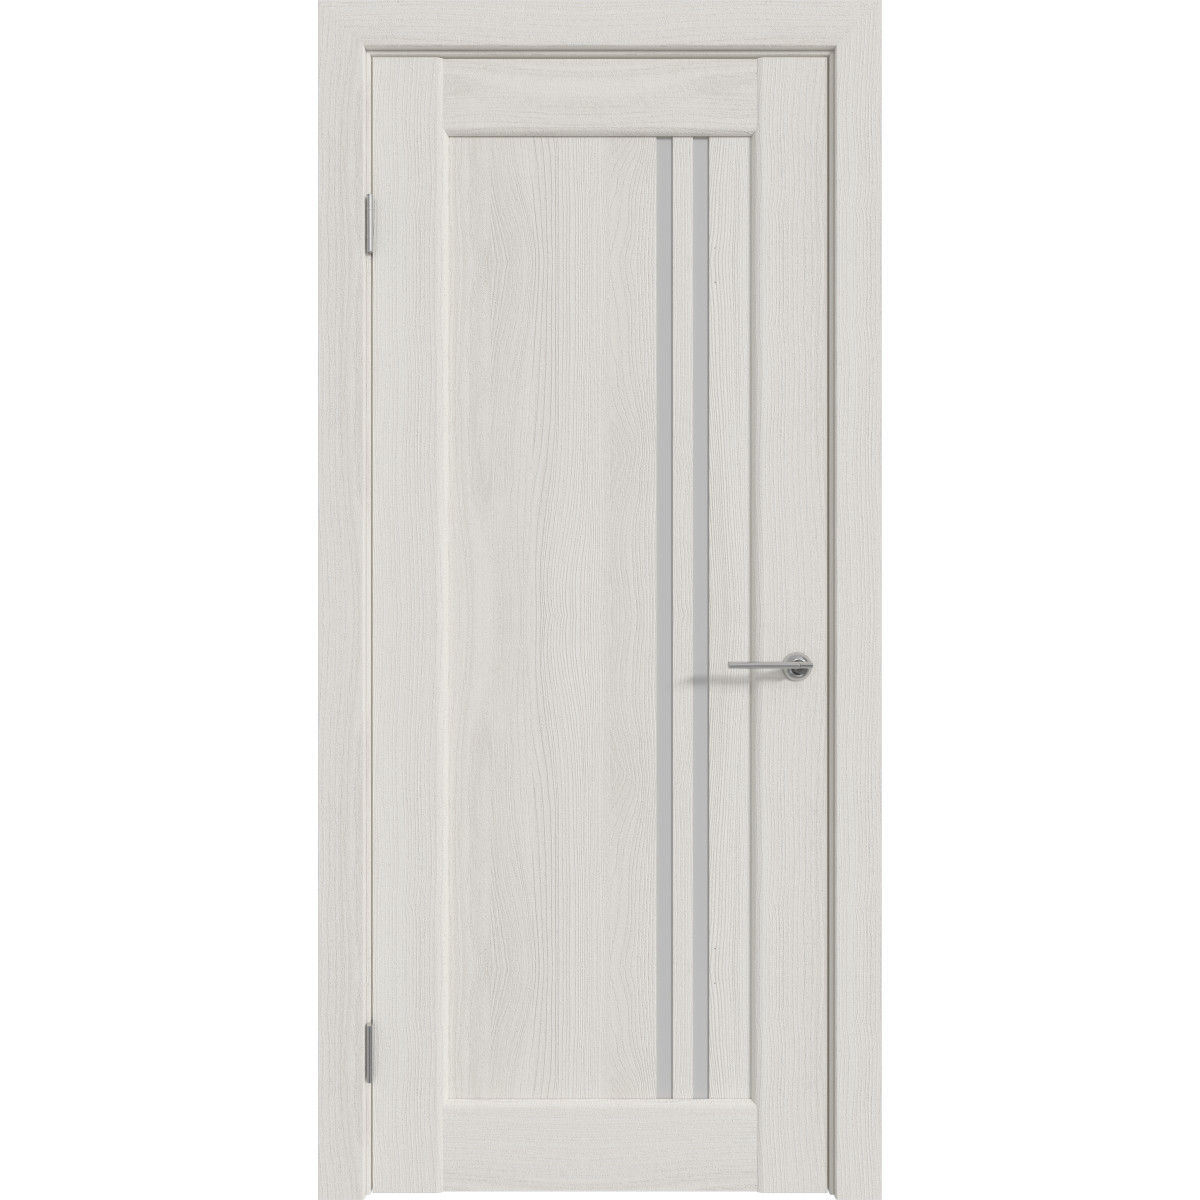 Дверь межкомнатная остеклённая с замком и петлями в комплекте Дельта вертикальная 60x200 см ПВХ цвет белёный дуб